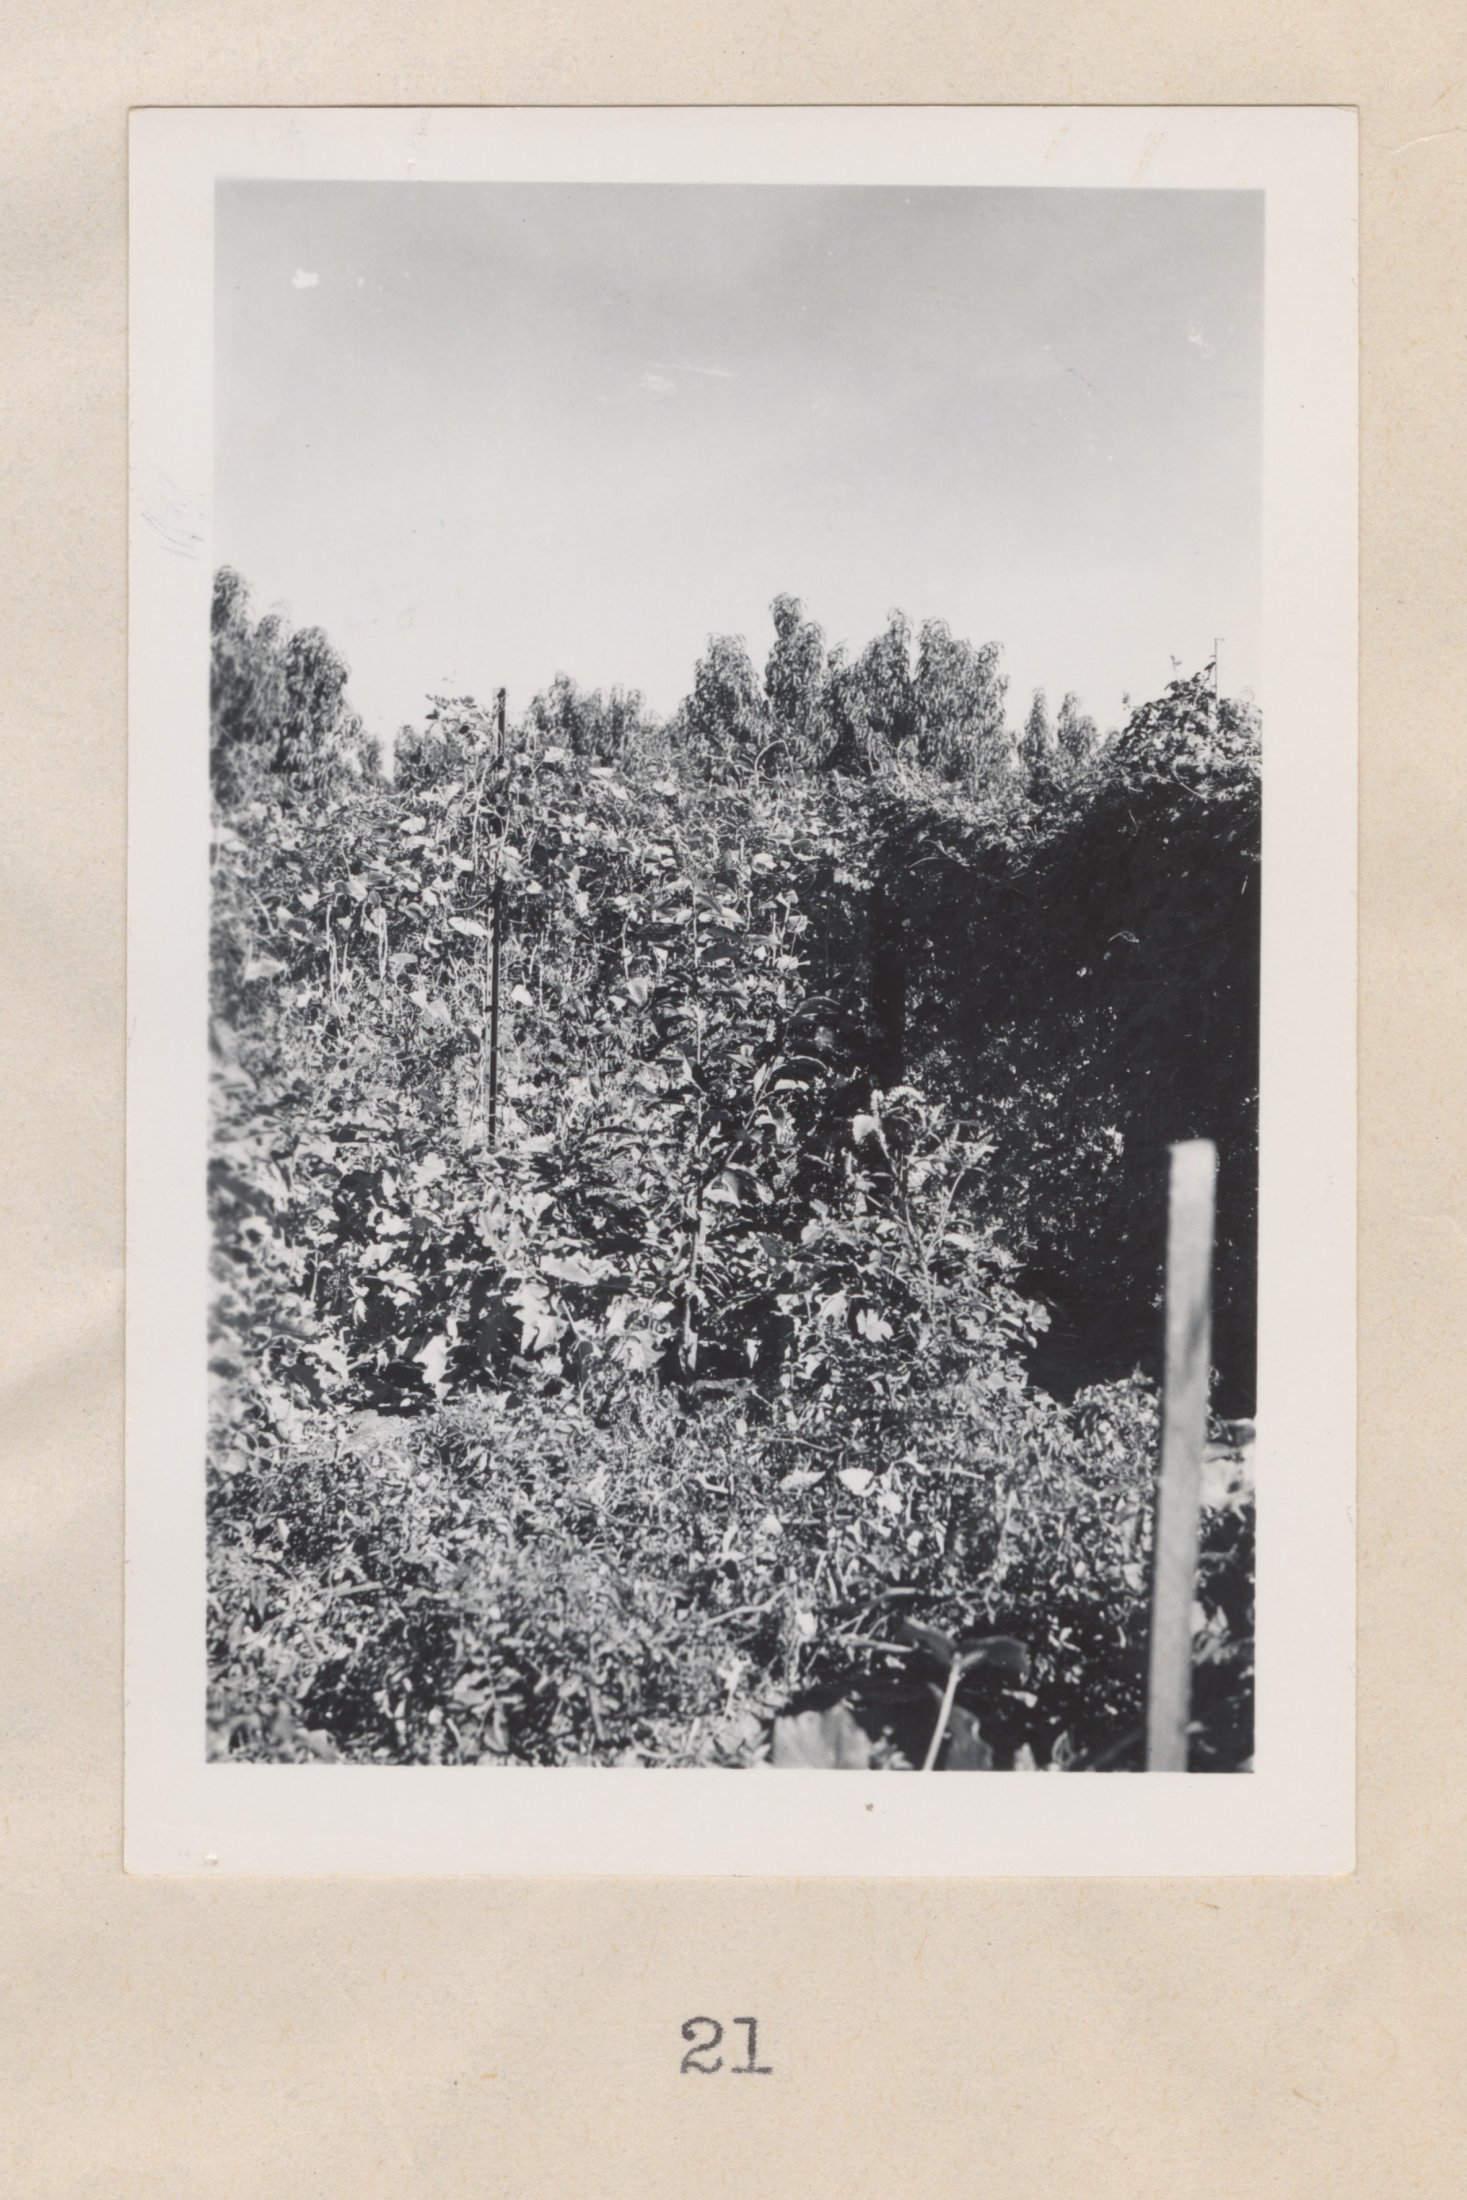 US Bains' Garden, Yuba City Area, Circa Late 1940s